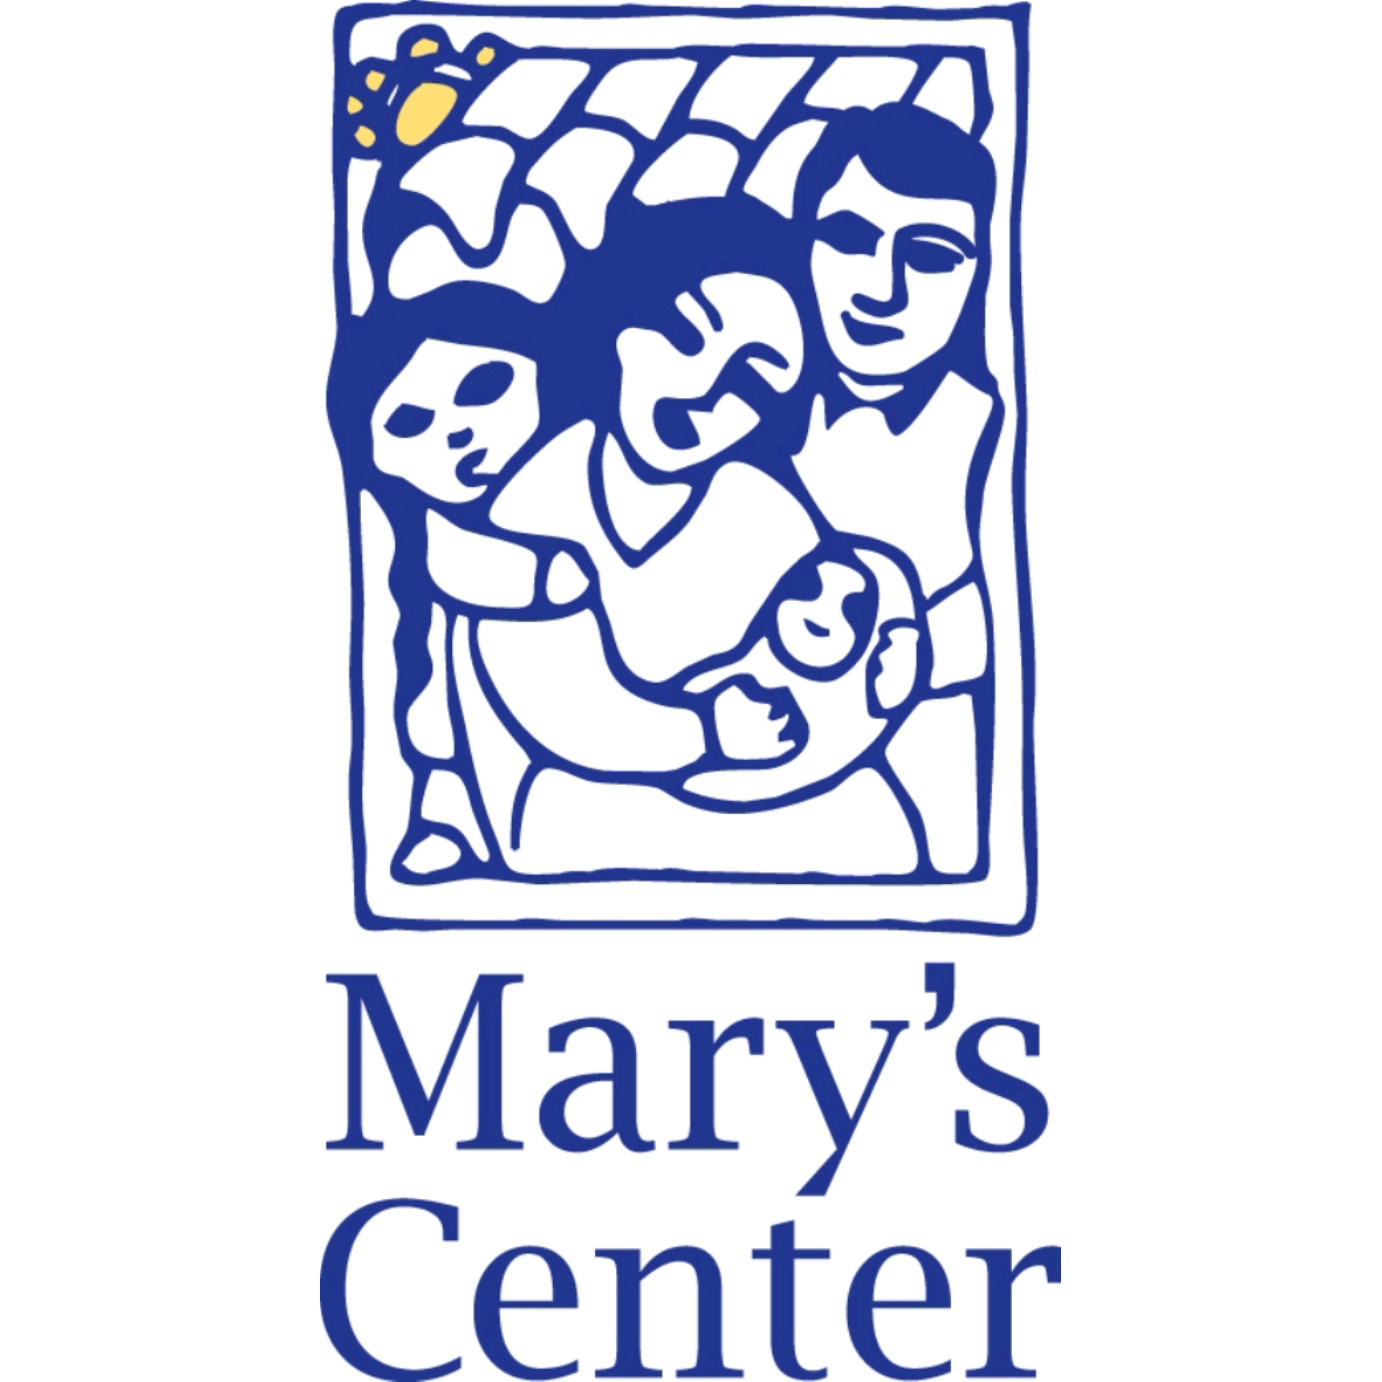 Mary’s Center